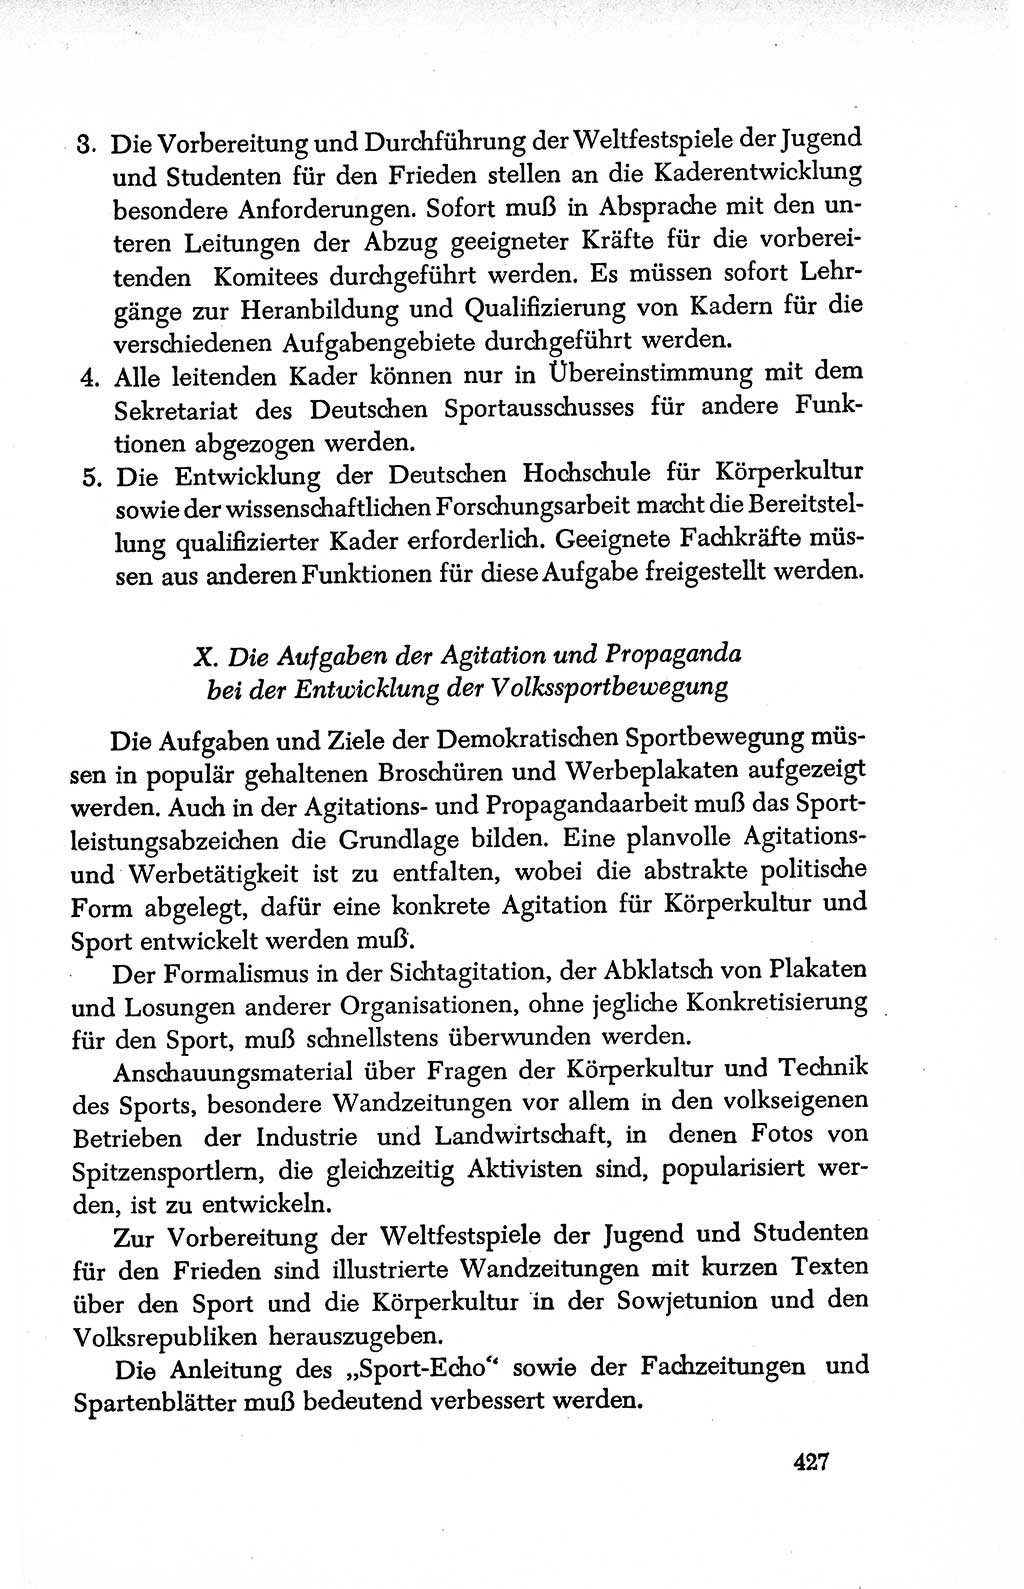 Dokumente der Sozialistischen Einheitspartei Deutschlands (SED) [Deutsche Demokratische Republik (DDR)] 1950-1952, Seite 427 (Dok. SED DDR 1950-1952, S. 427)